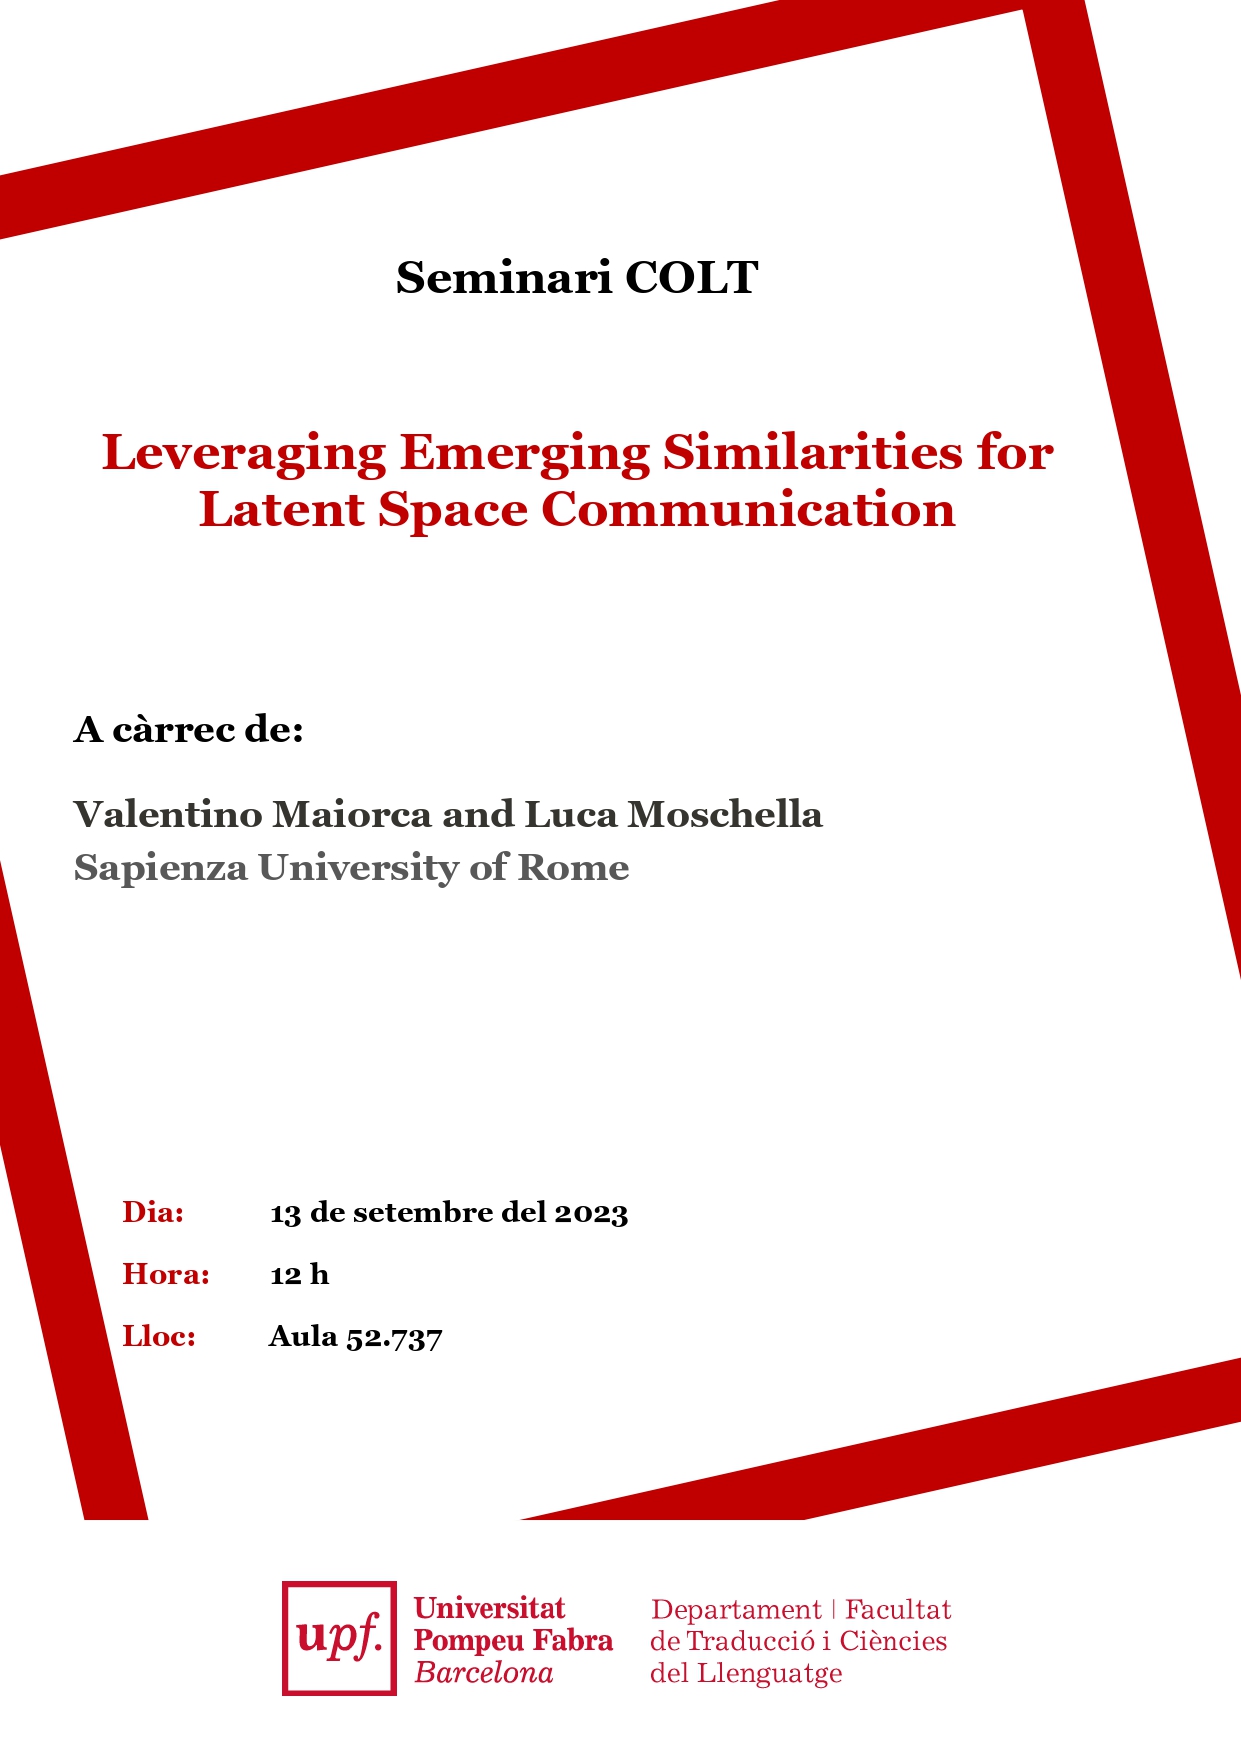 13/09/2023 Seminari del COLT, a càrrec de Valentino Maiorca and Luca Moschella, Sapienza University of Rome